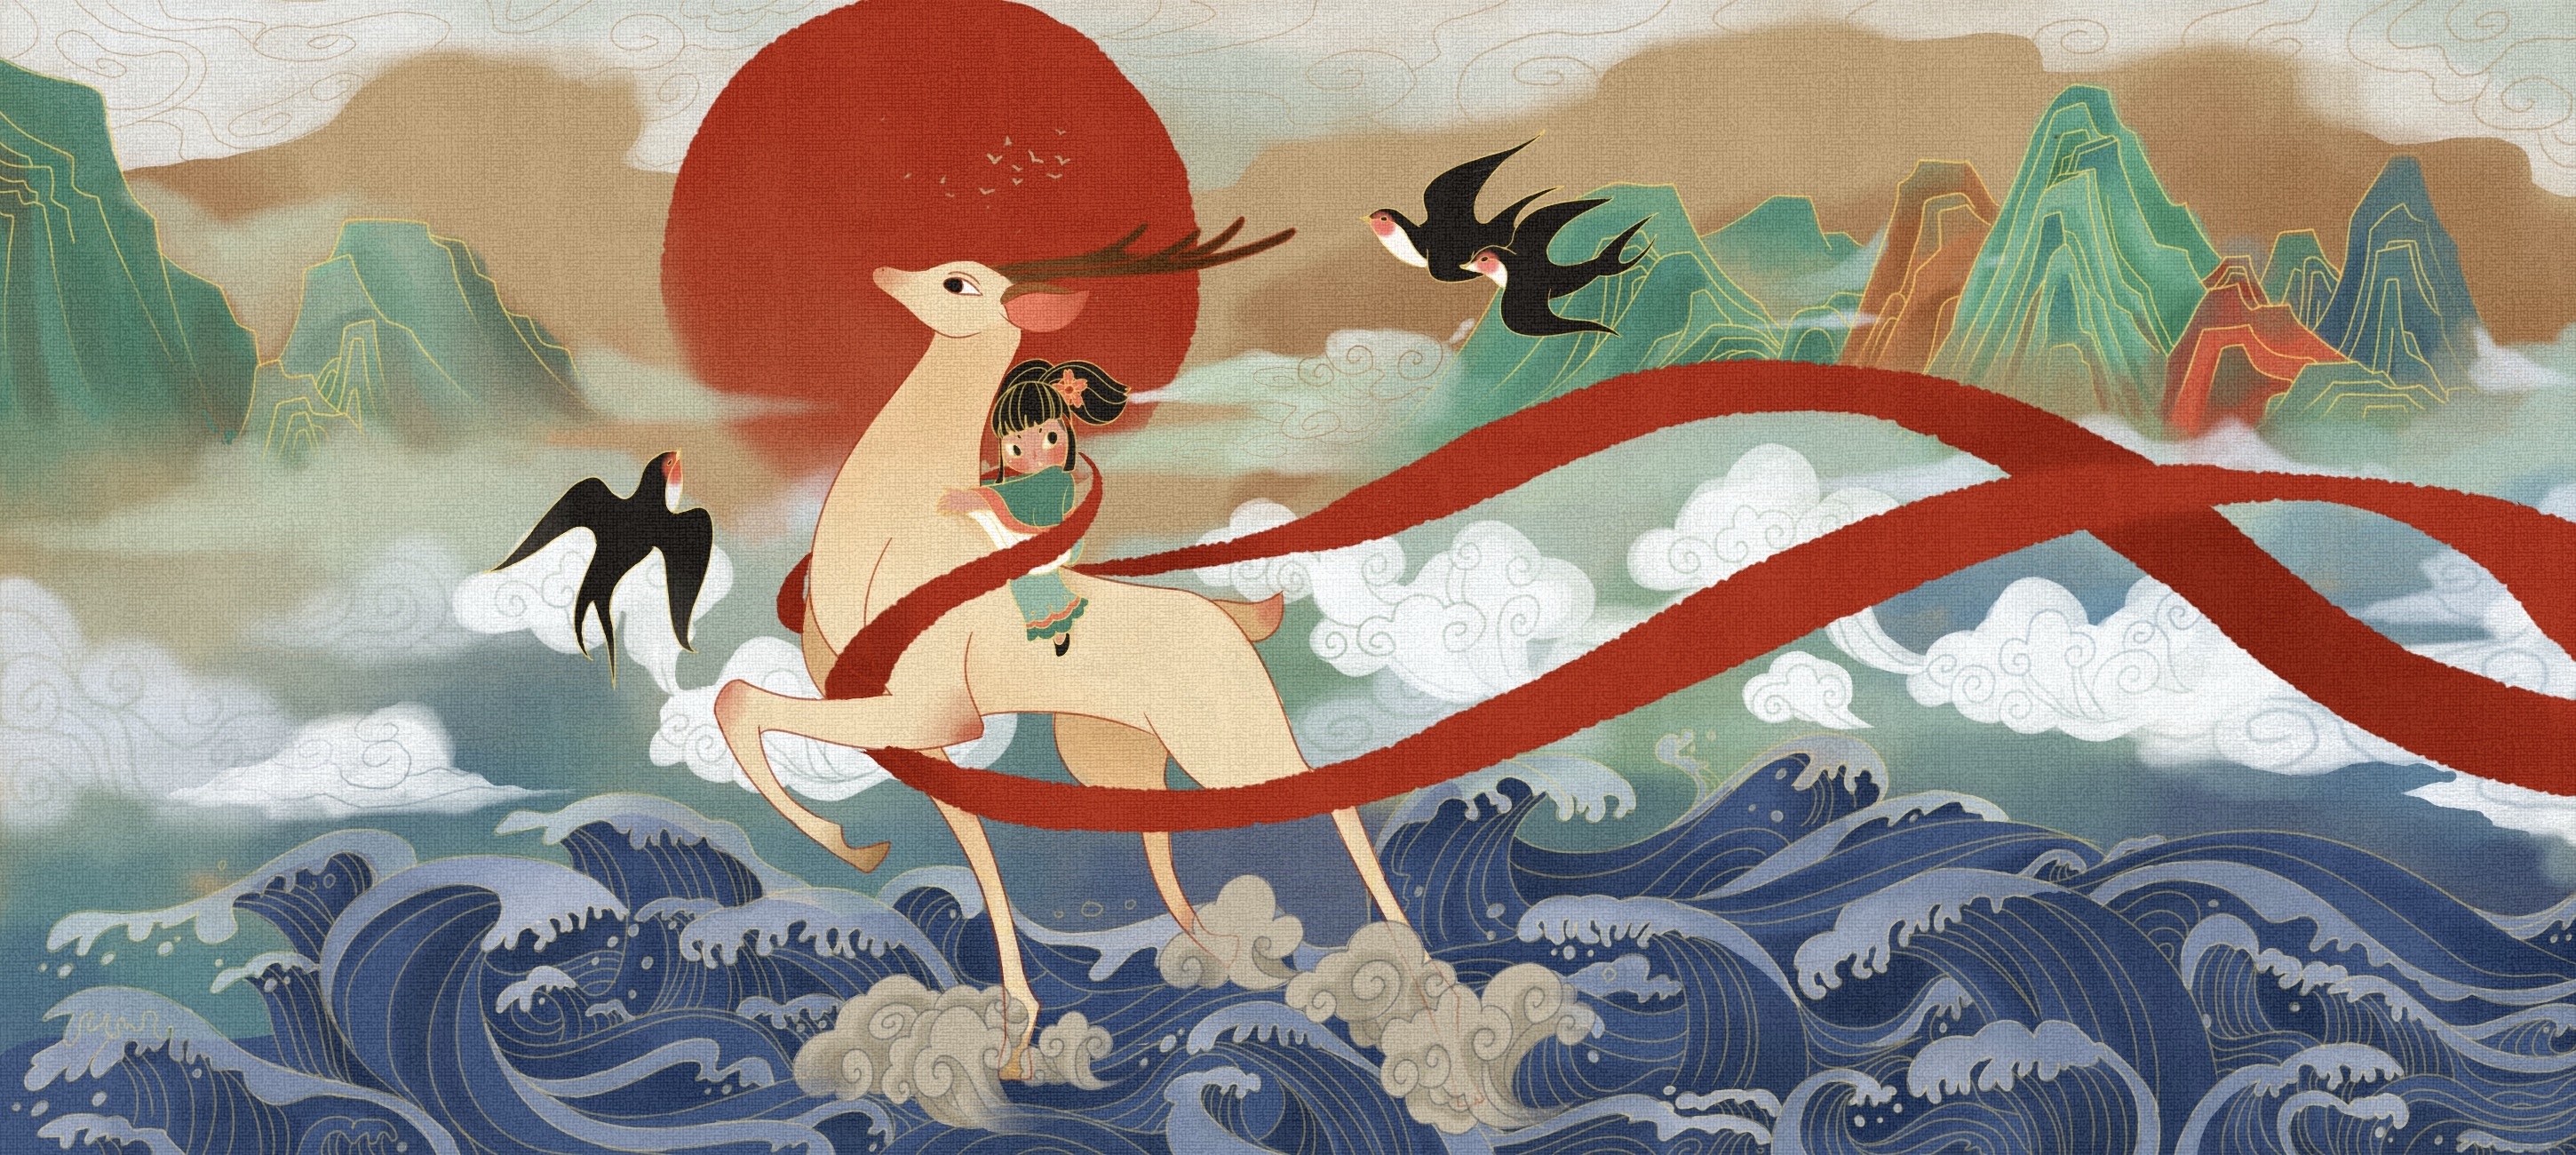 中华世纪坛展流失海外壁画,童年记忆中动画《九色鹿》的东方美学